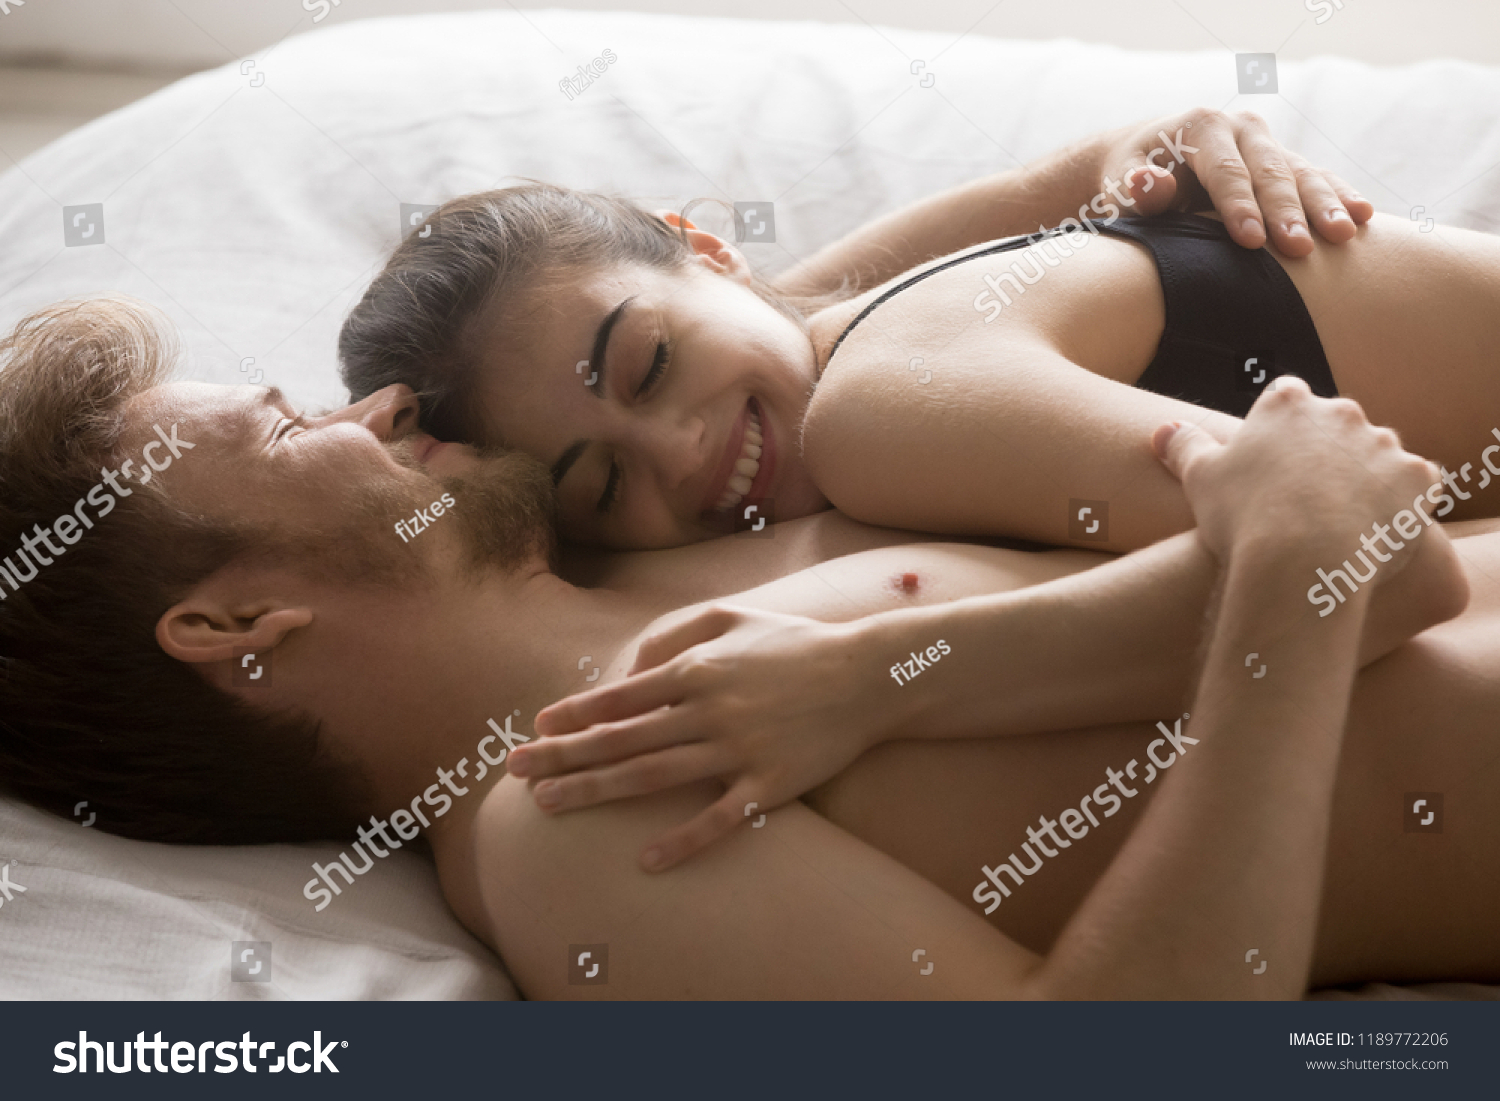 Naked Couple